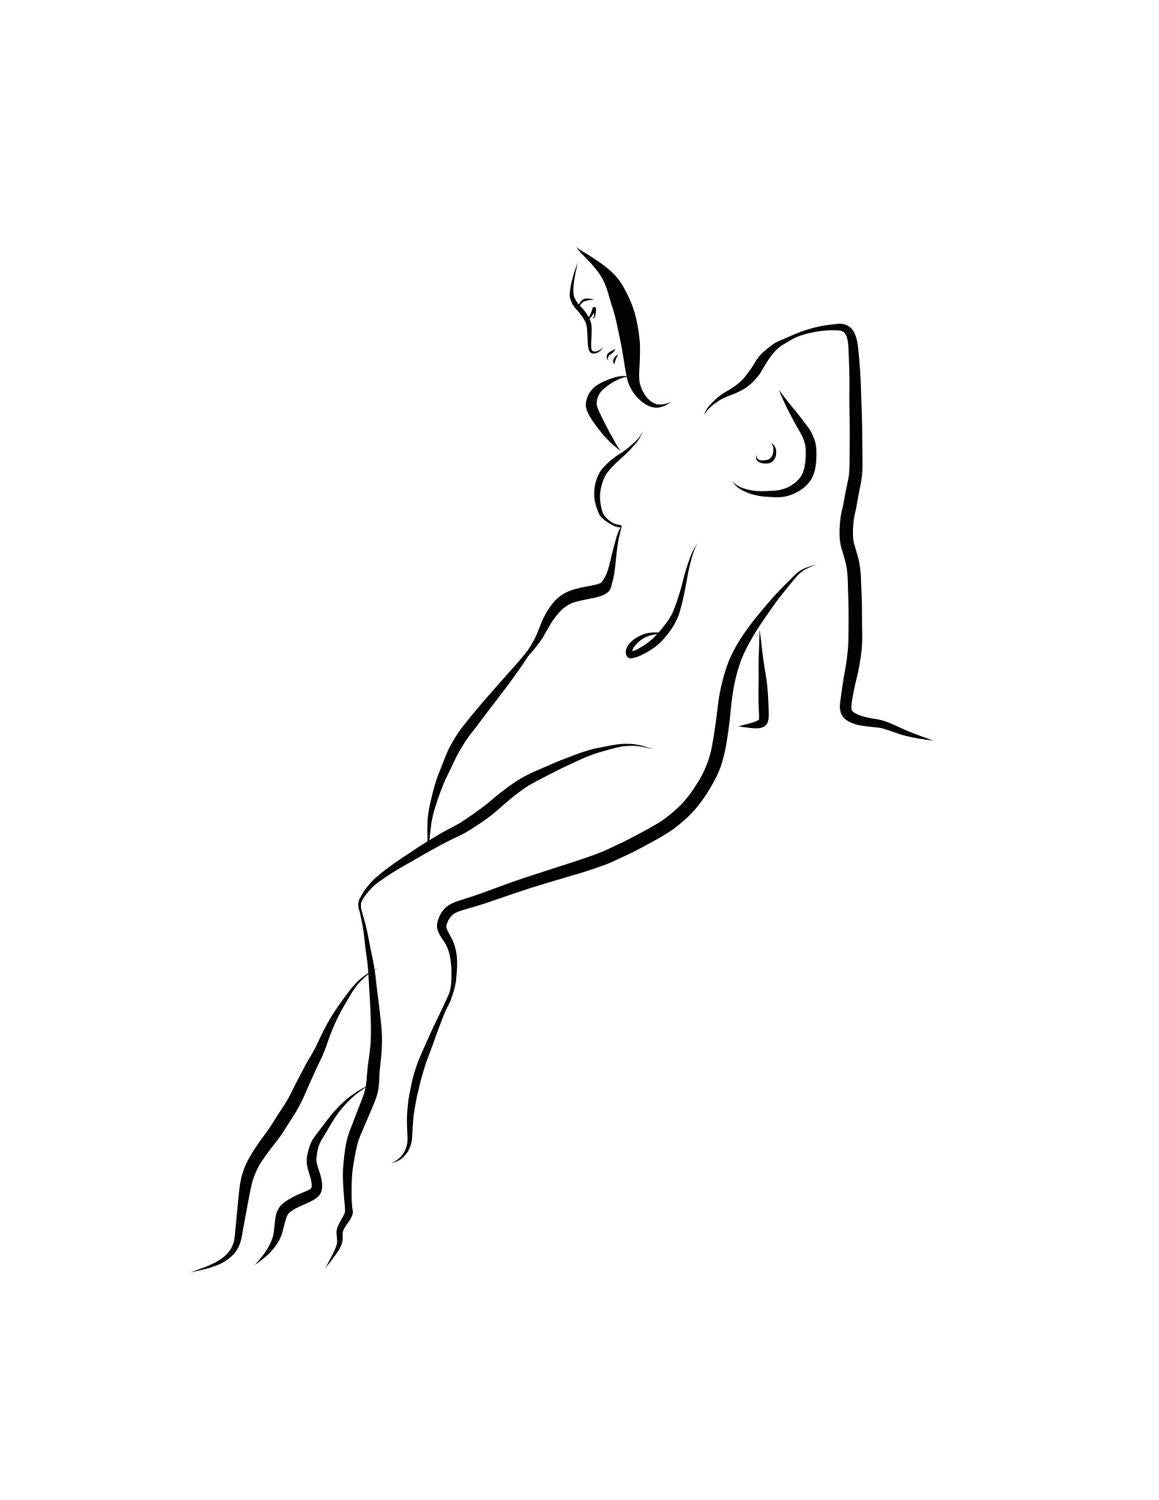 Michael Binkley Nude Print - Haiku #25, 1/50 - Digital Vector Drawing Leaning Female Nude Woman Figure